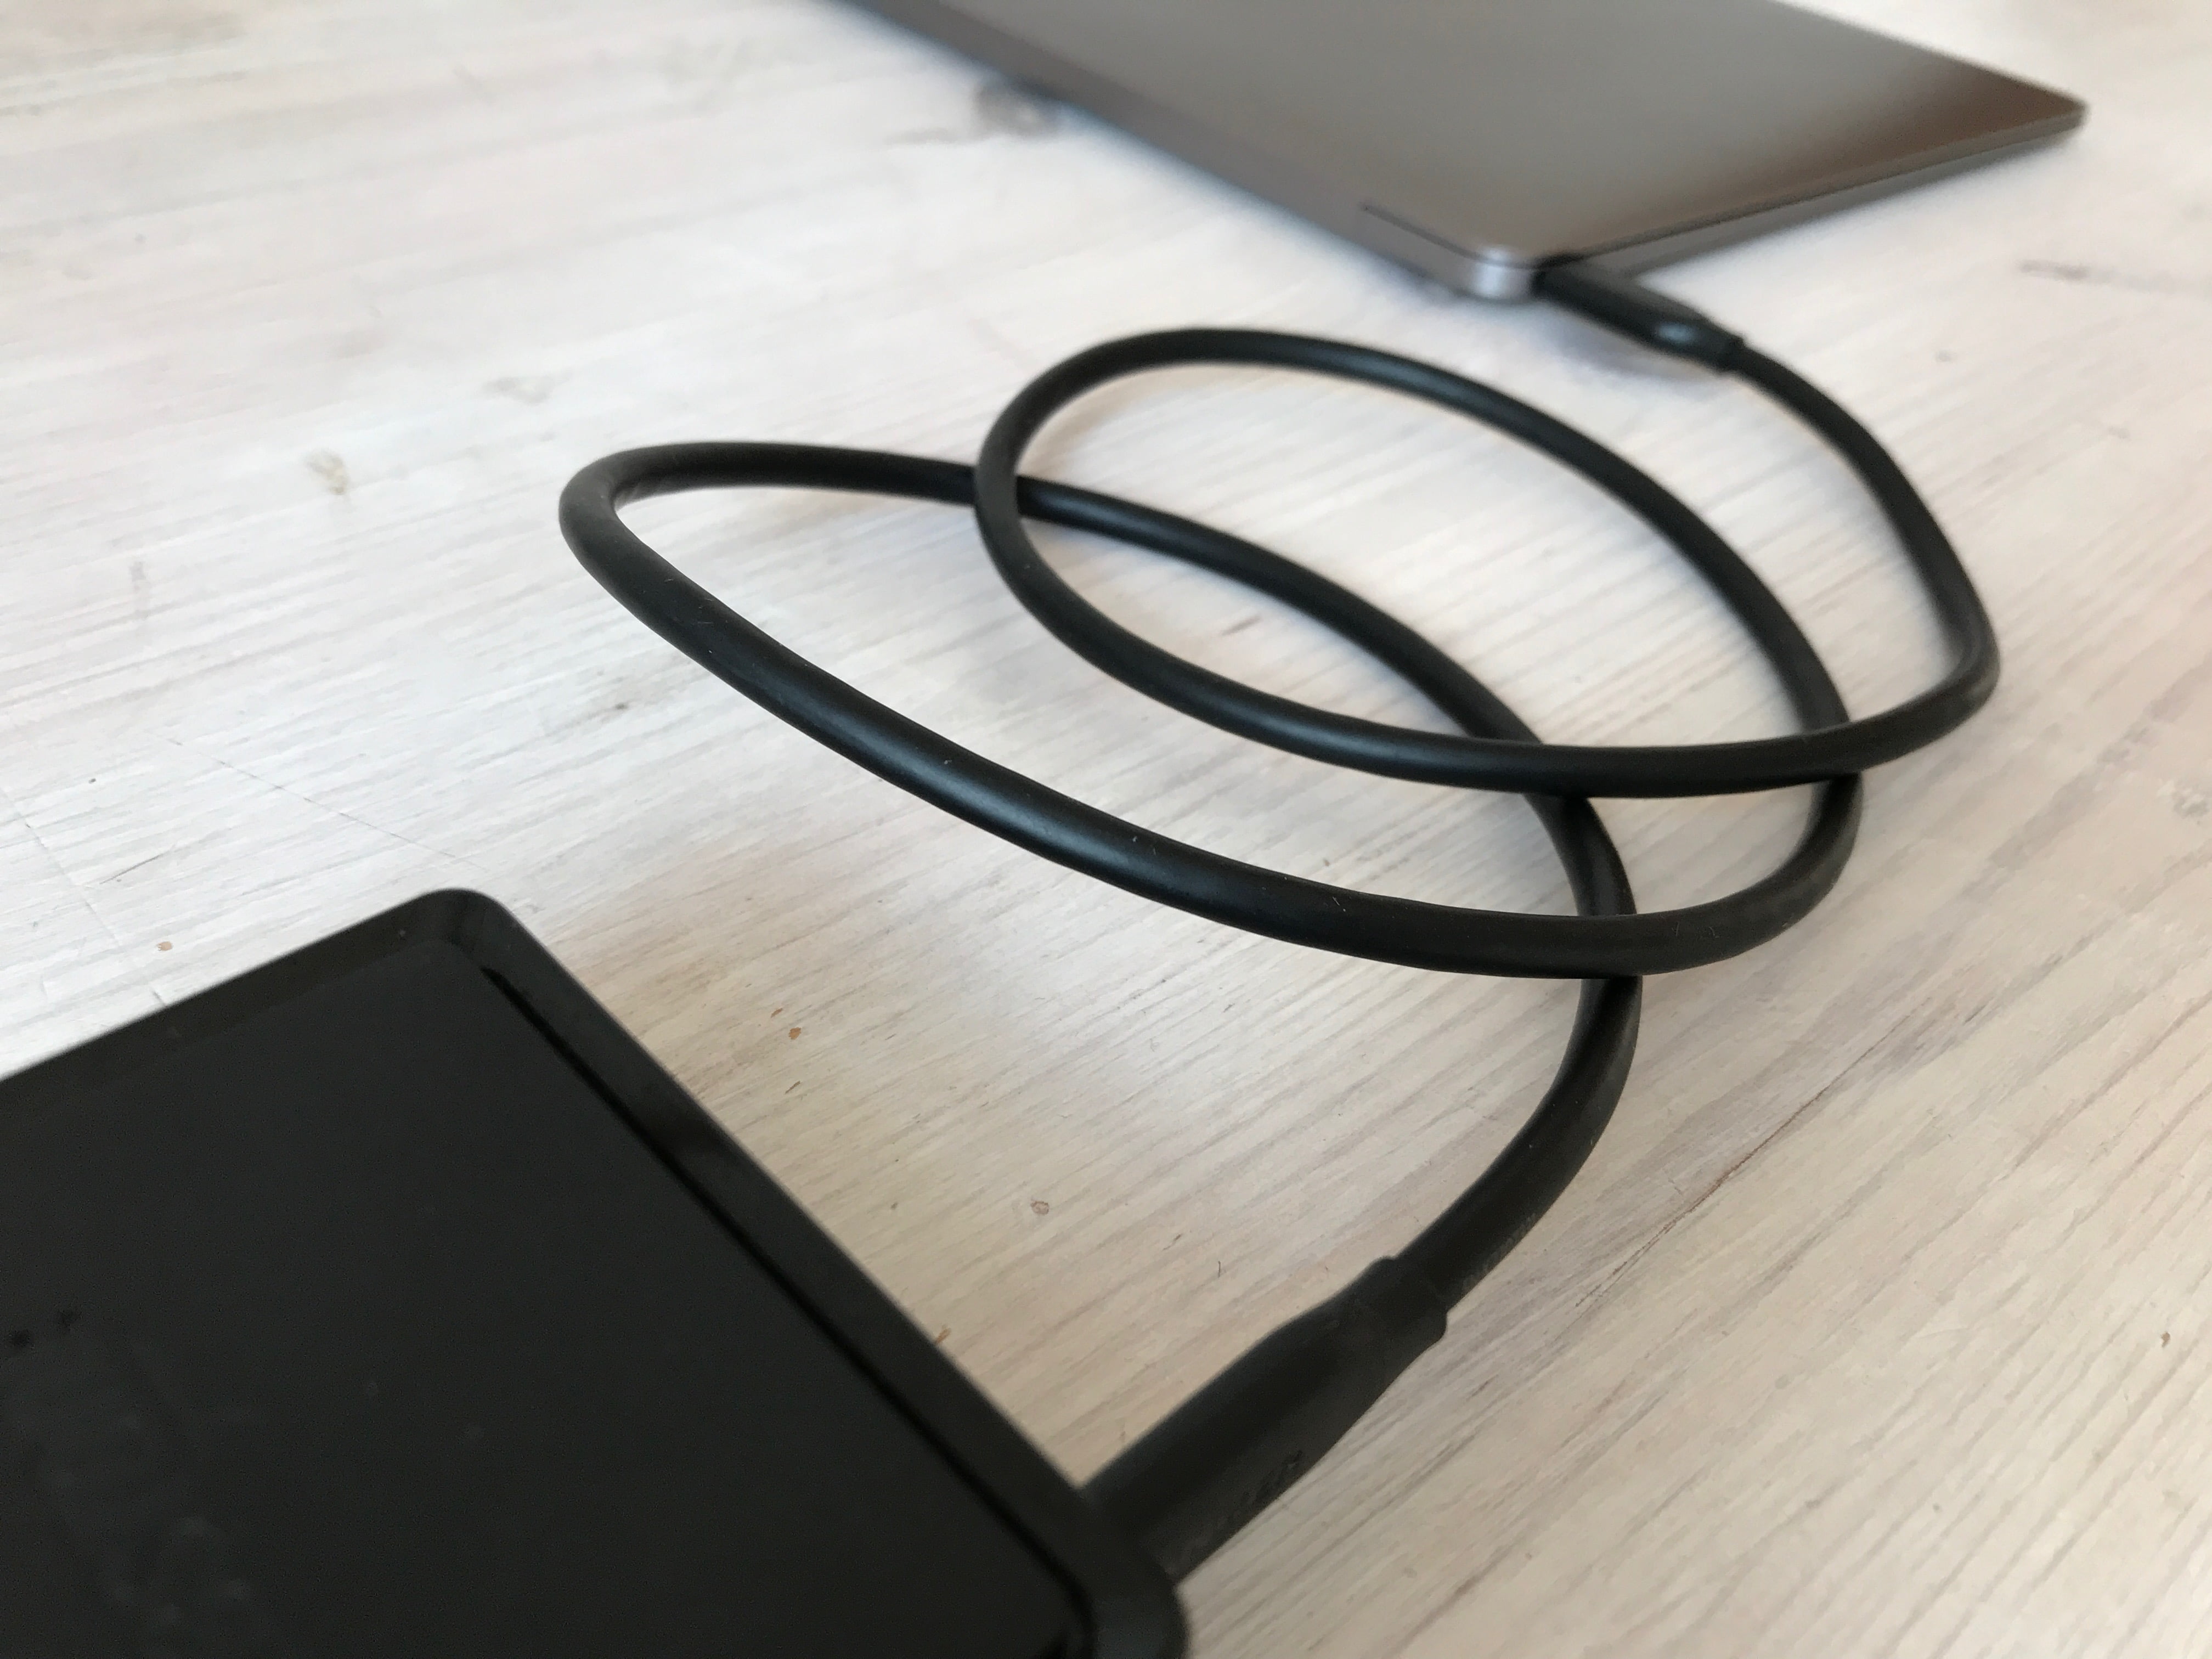 USB-C Kabel aufgerollt Schreibtisch